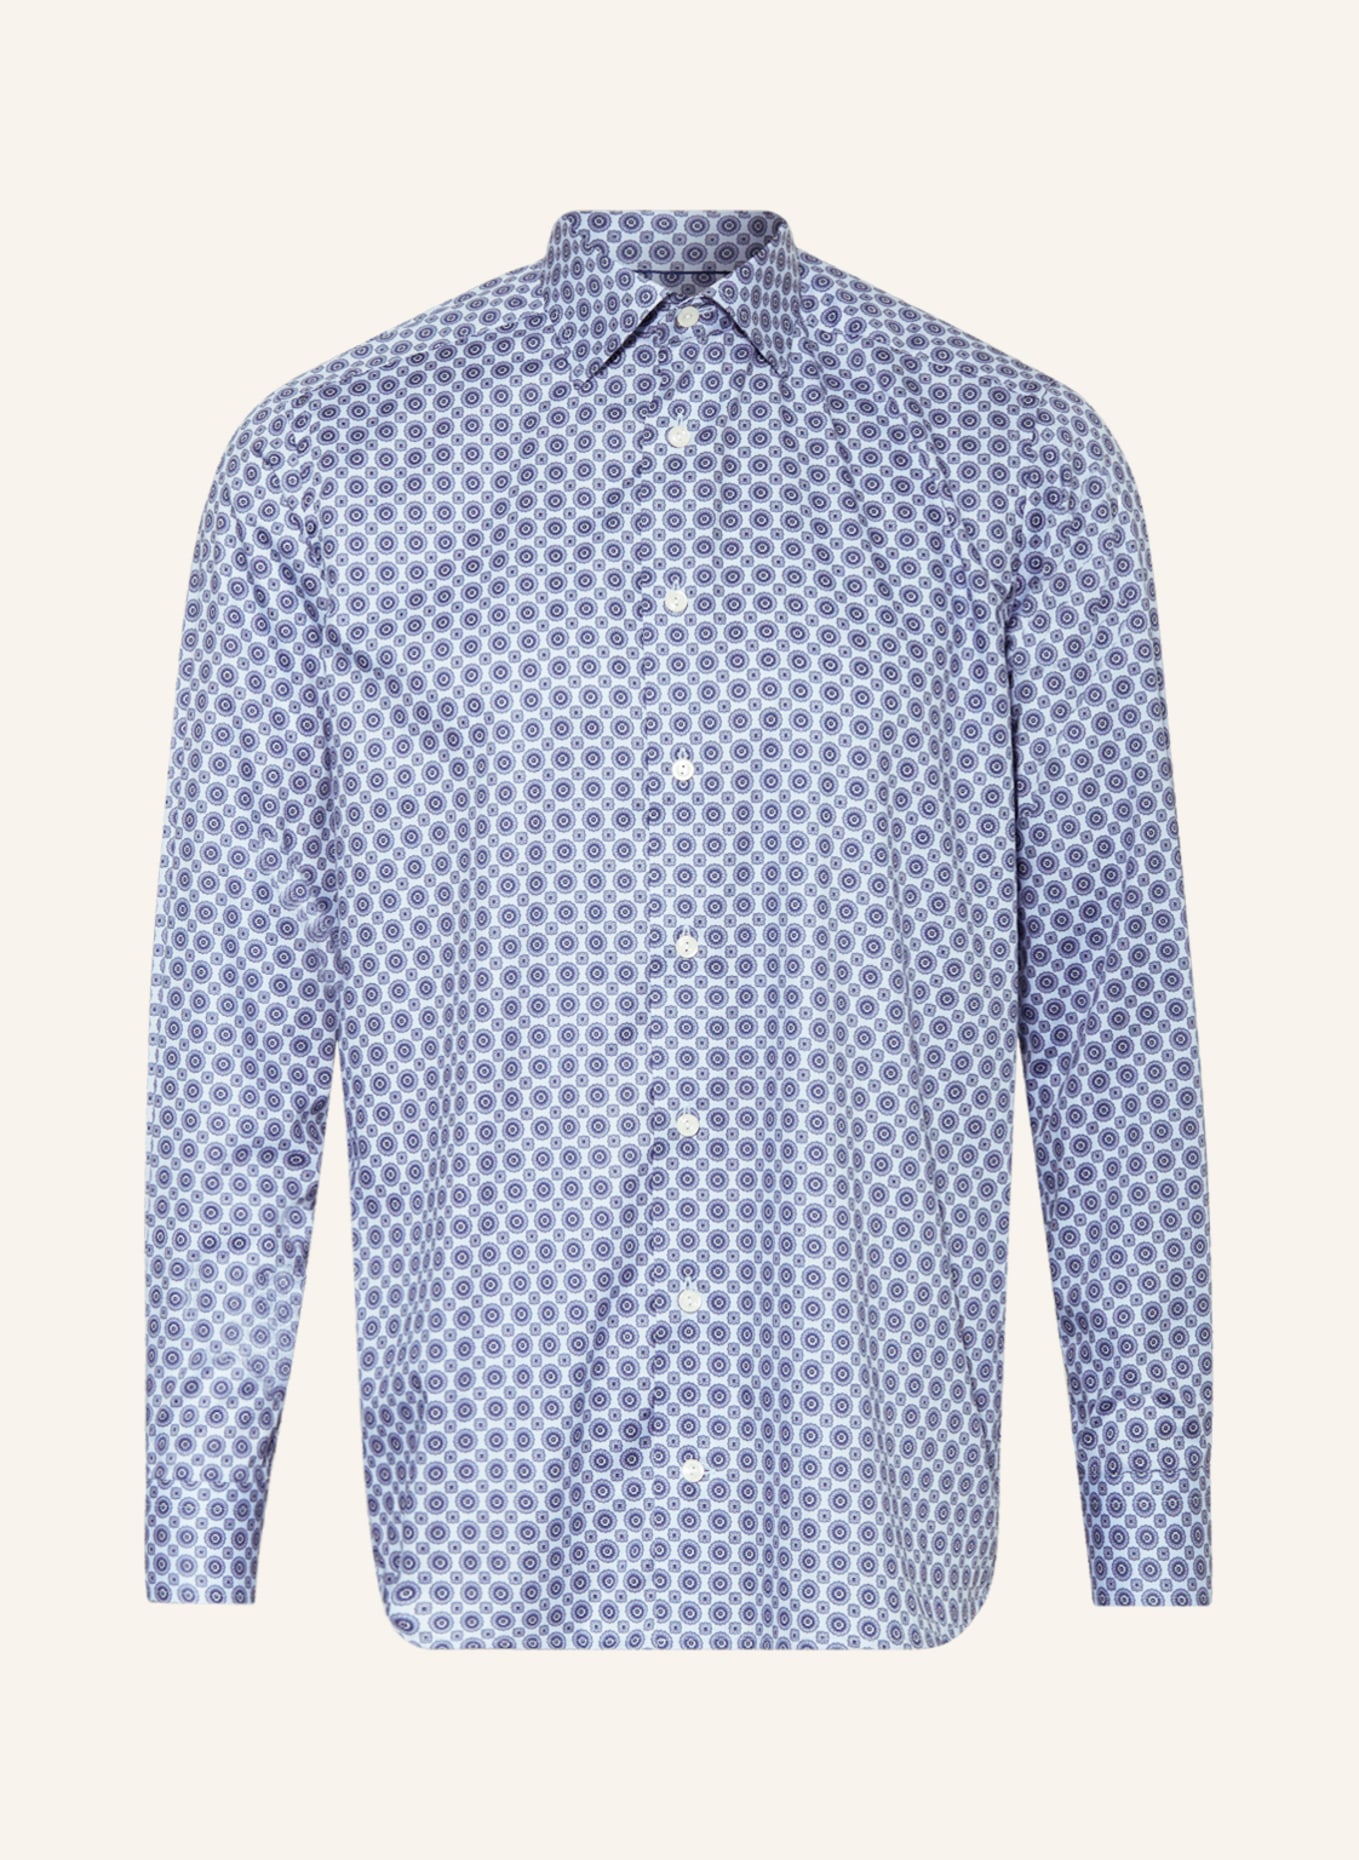 ETON Shirt contemporary fit, Color: LIGHT BLUE/ BLUE (Image 1)